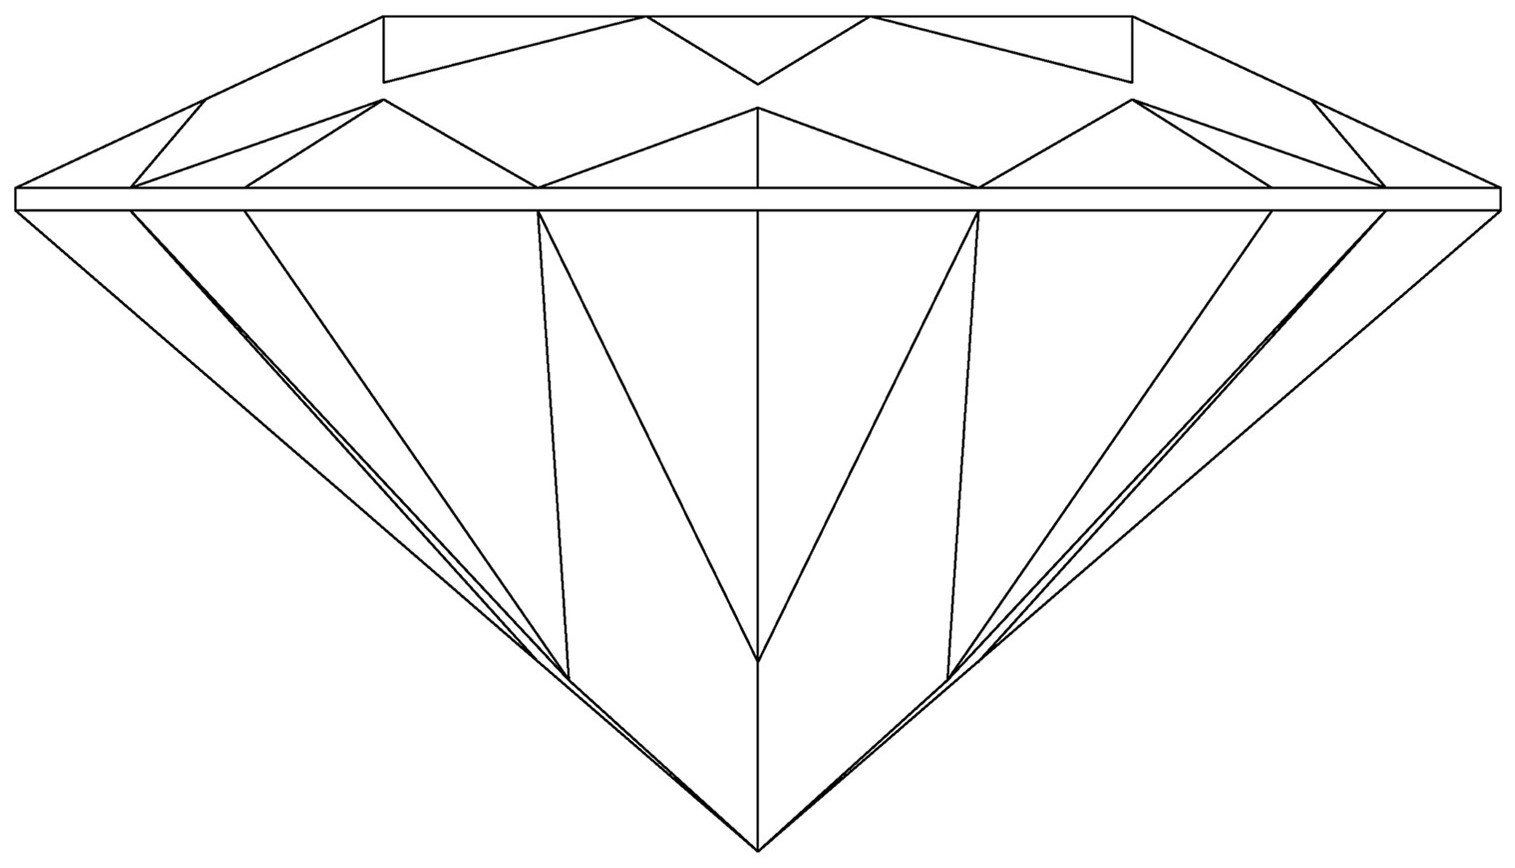 本外观设计产品的名称:钻石2